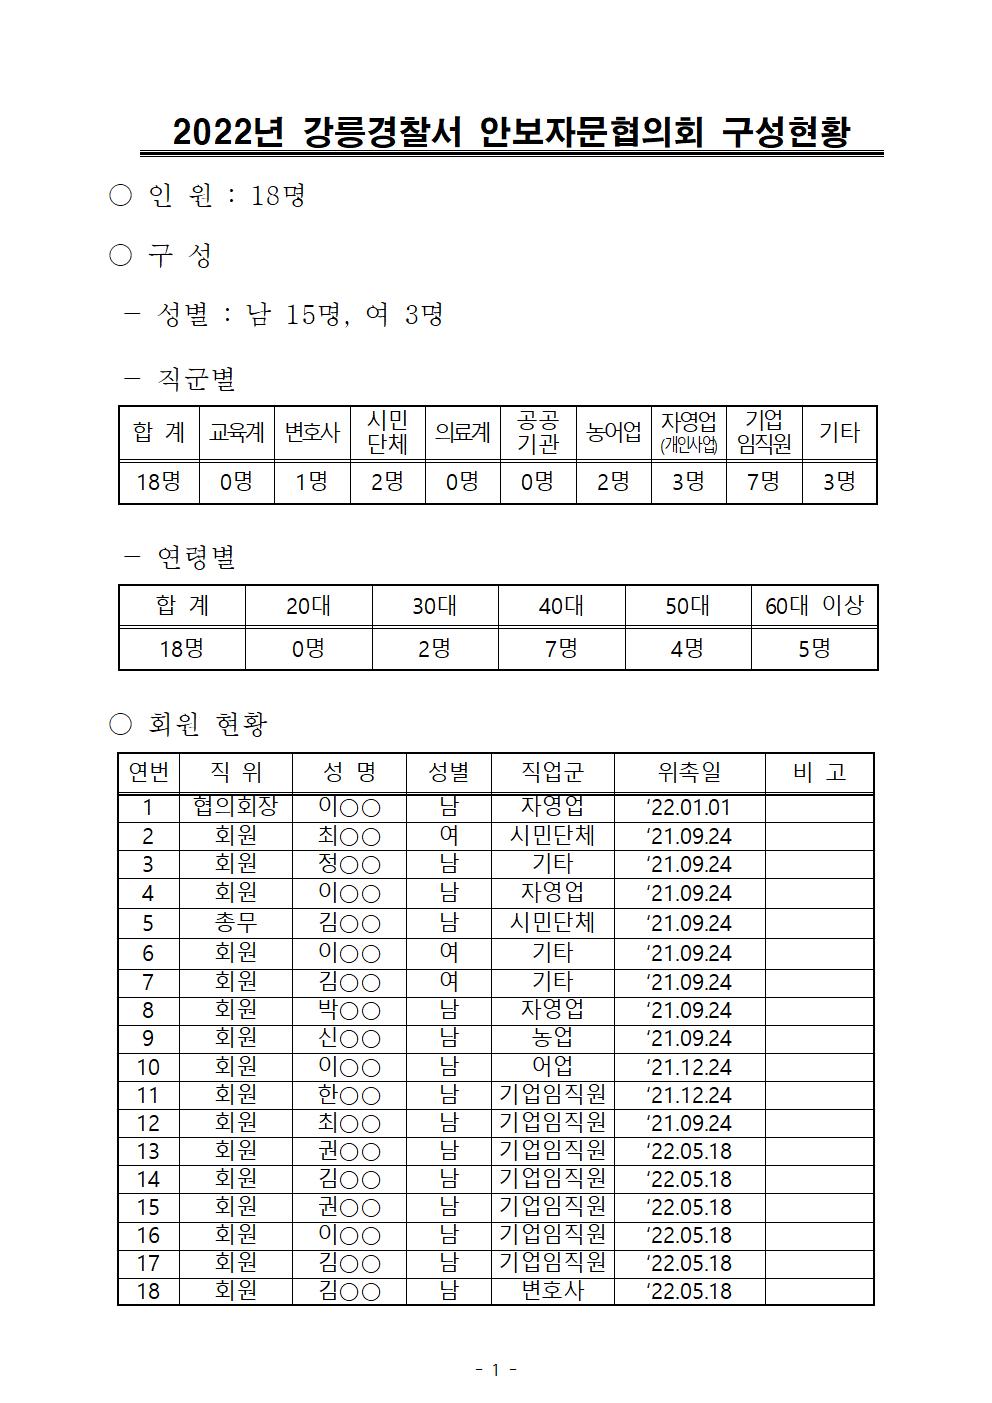 2022년 안보자문협의회 회의 결과-2022년 강릉경찰서 안보자문협의회 구성현황(220518)001